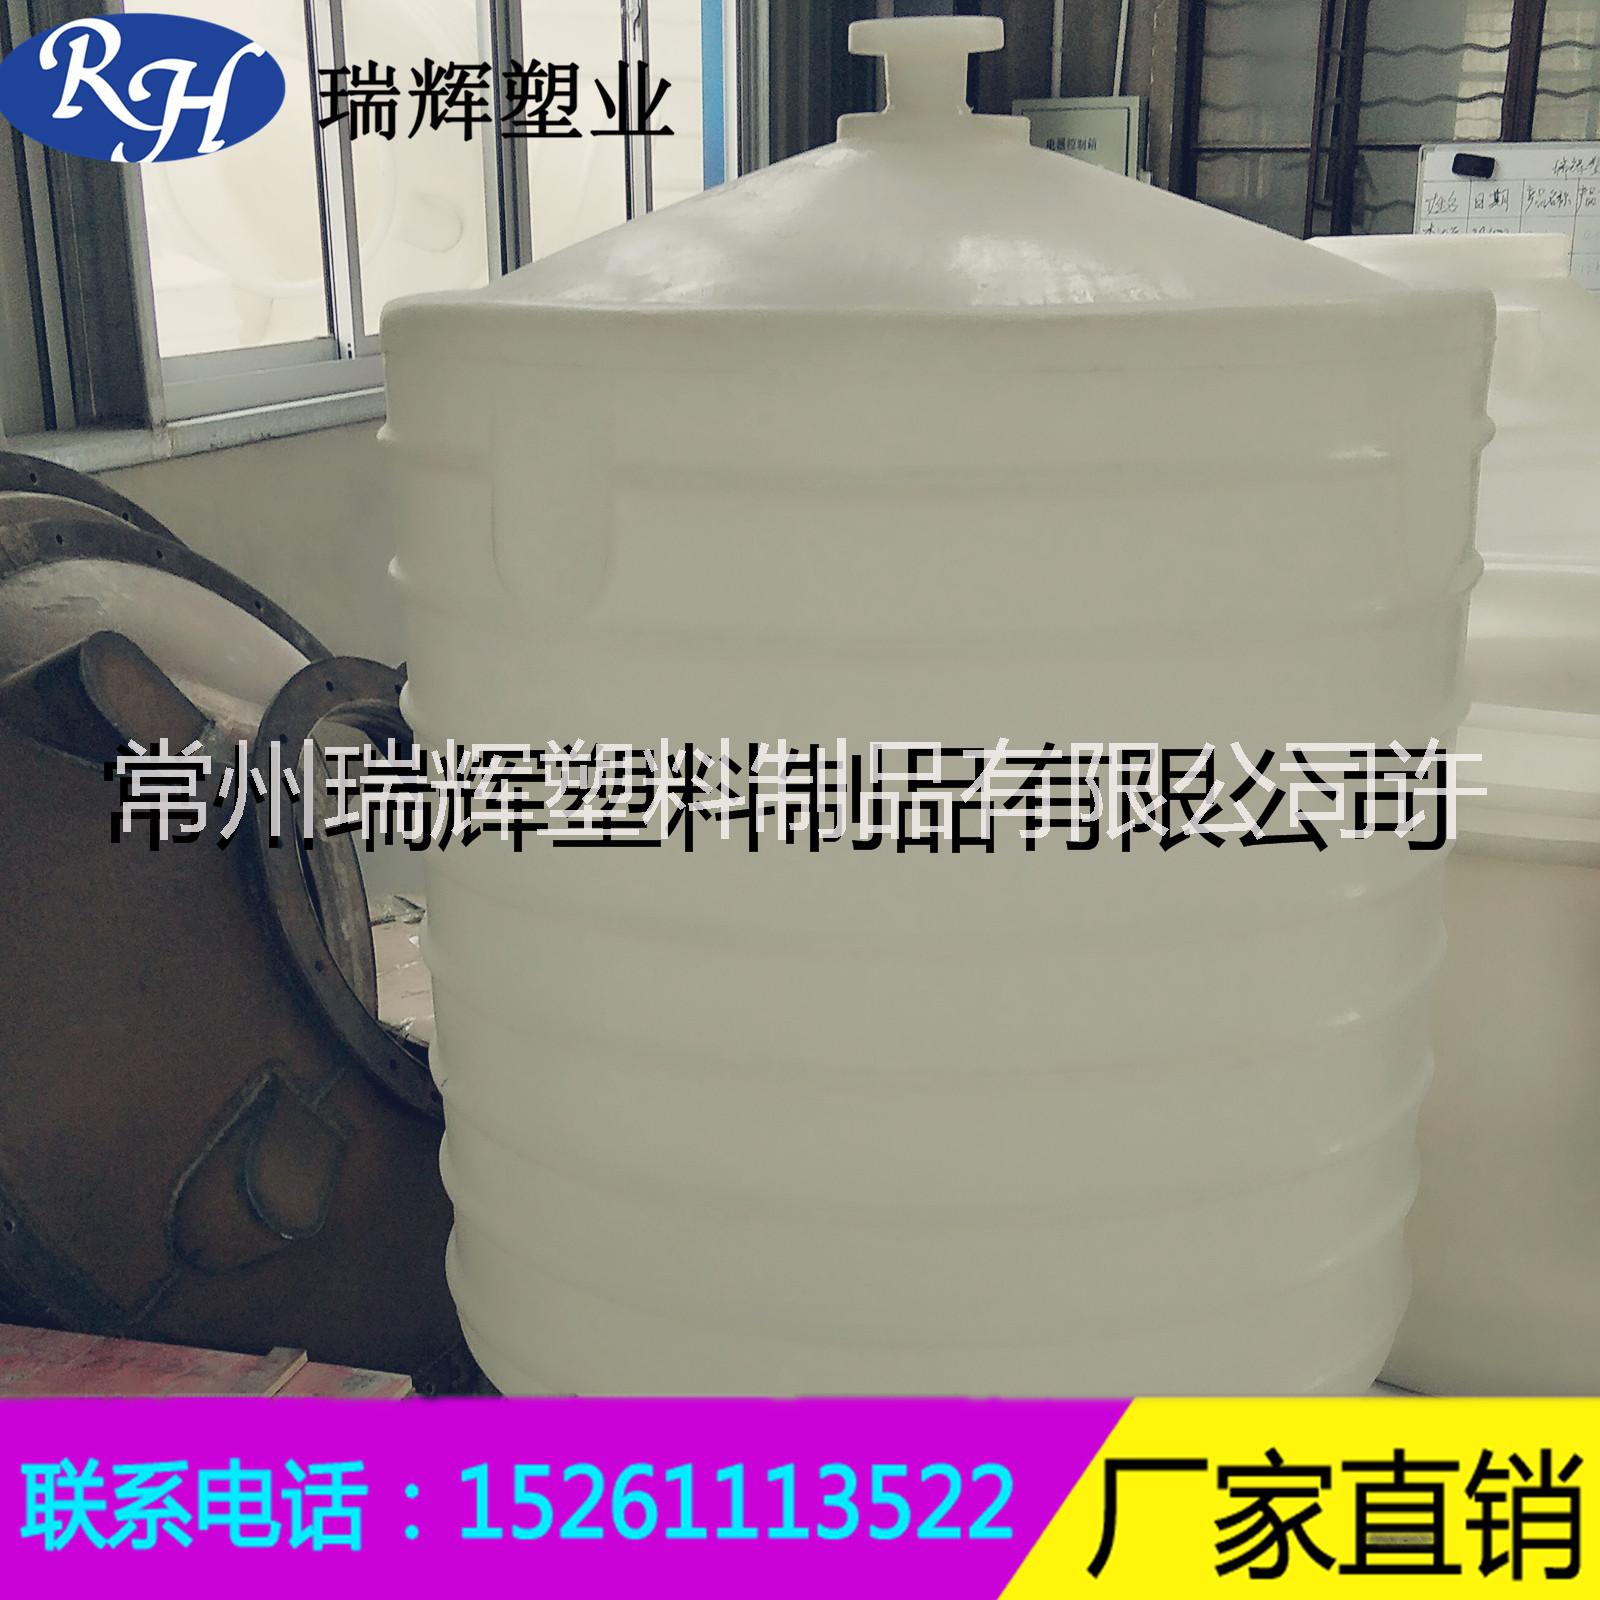 河北厂家直销塑料桶 塑料水桶